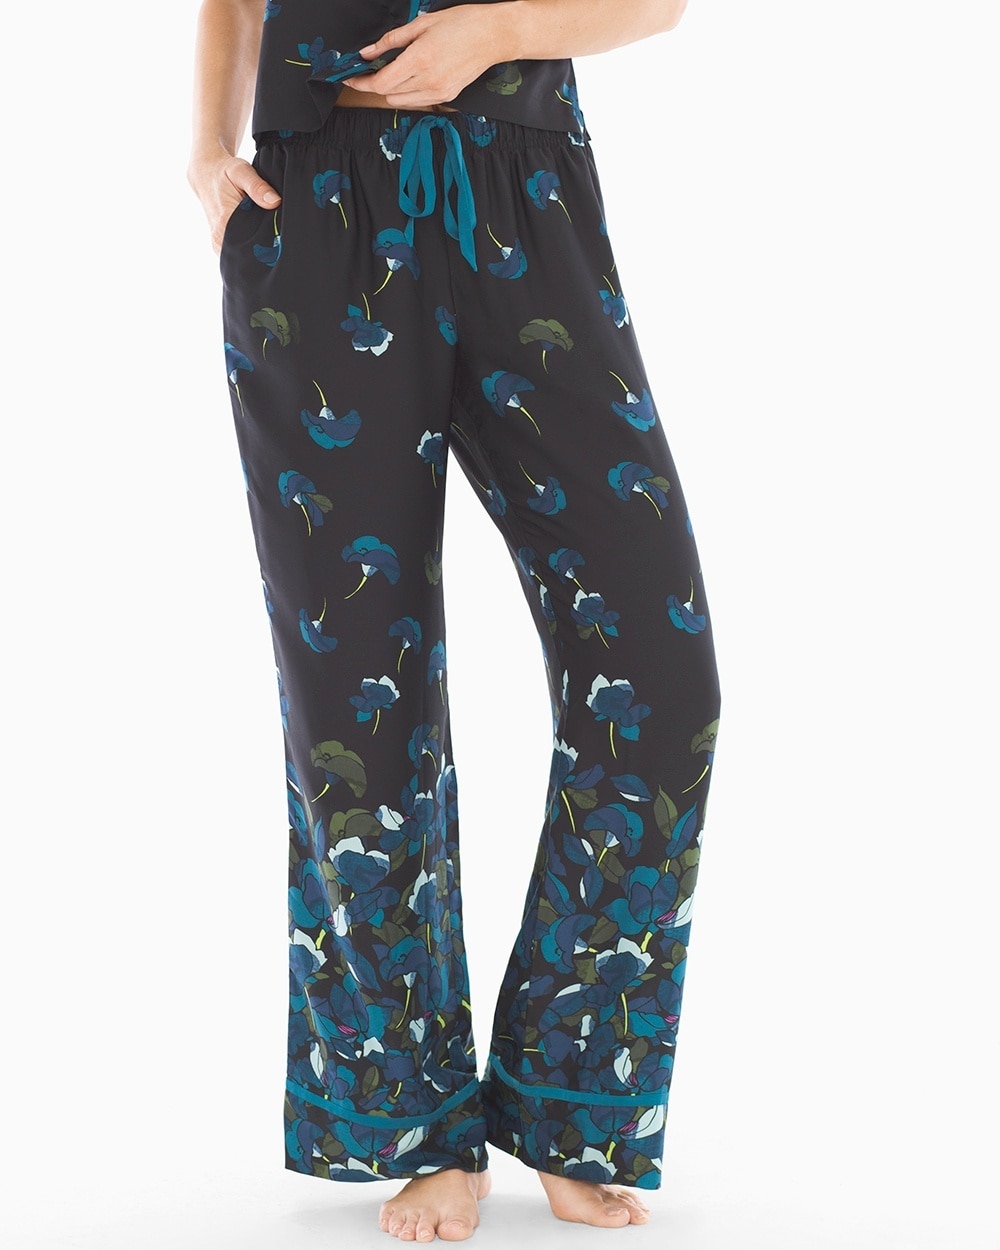 Satin Pajama Pants Poetic Floral Black RG